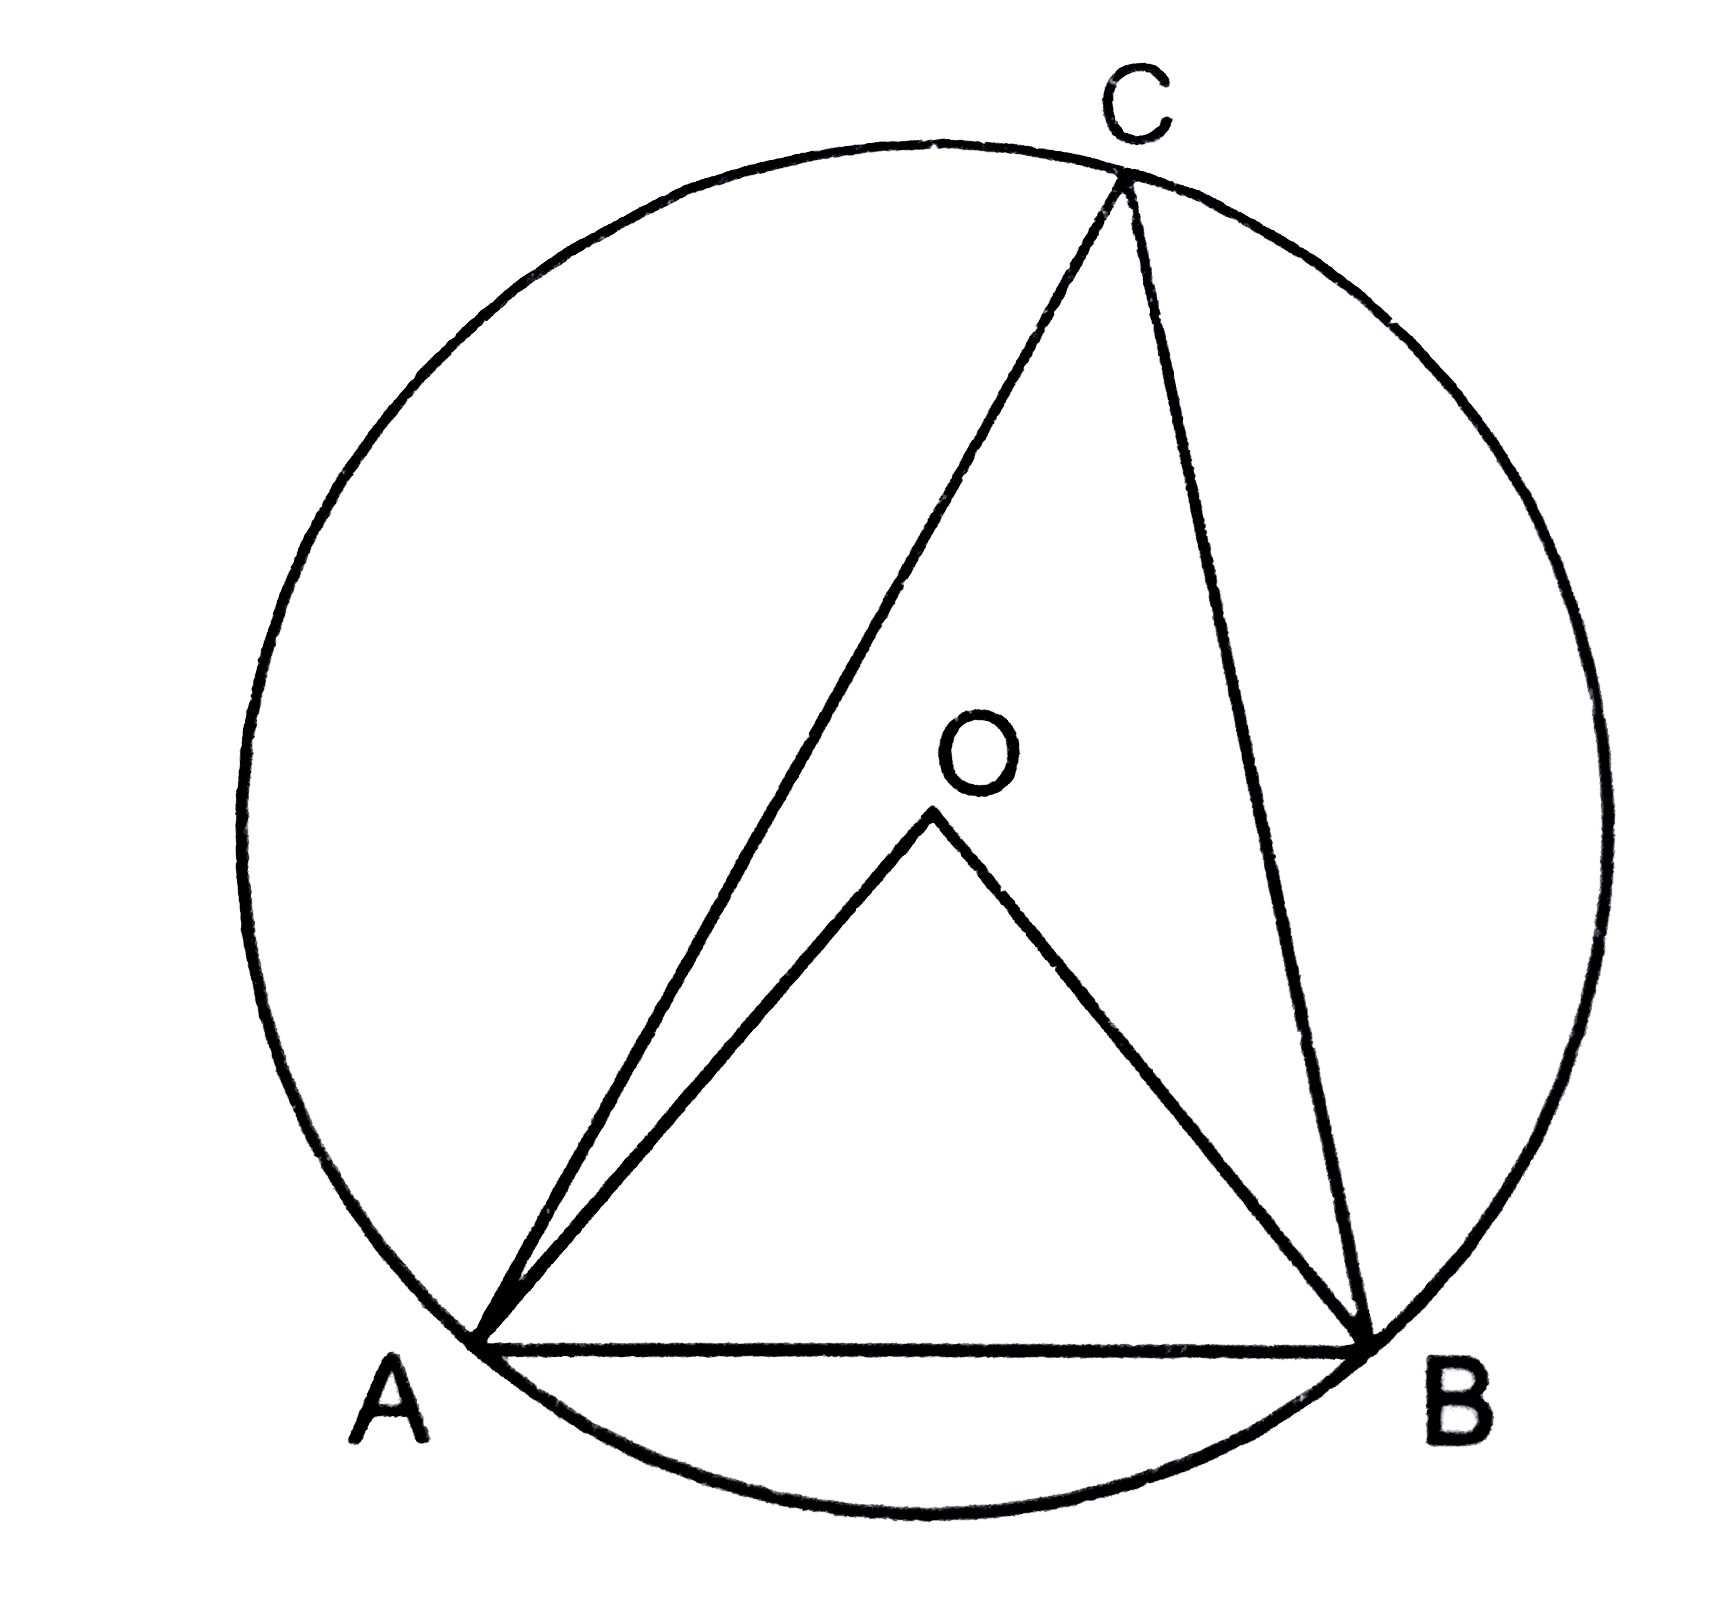 चित्र में ,O  वृत्त का केंद्र  है तथा angle OBA = 60^(@)    है , तो angle ACB   का मान  है :